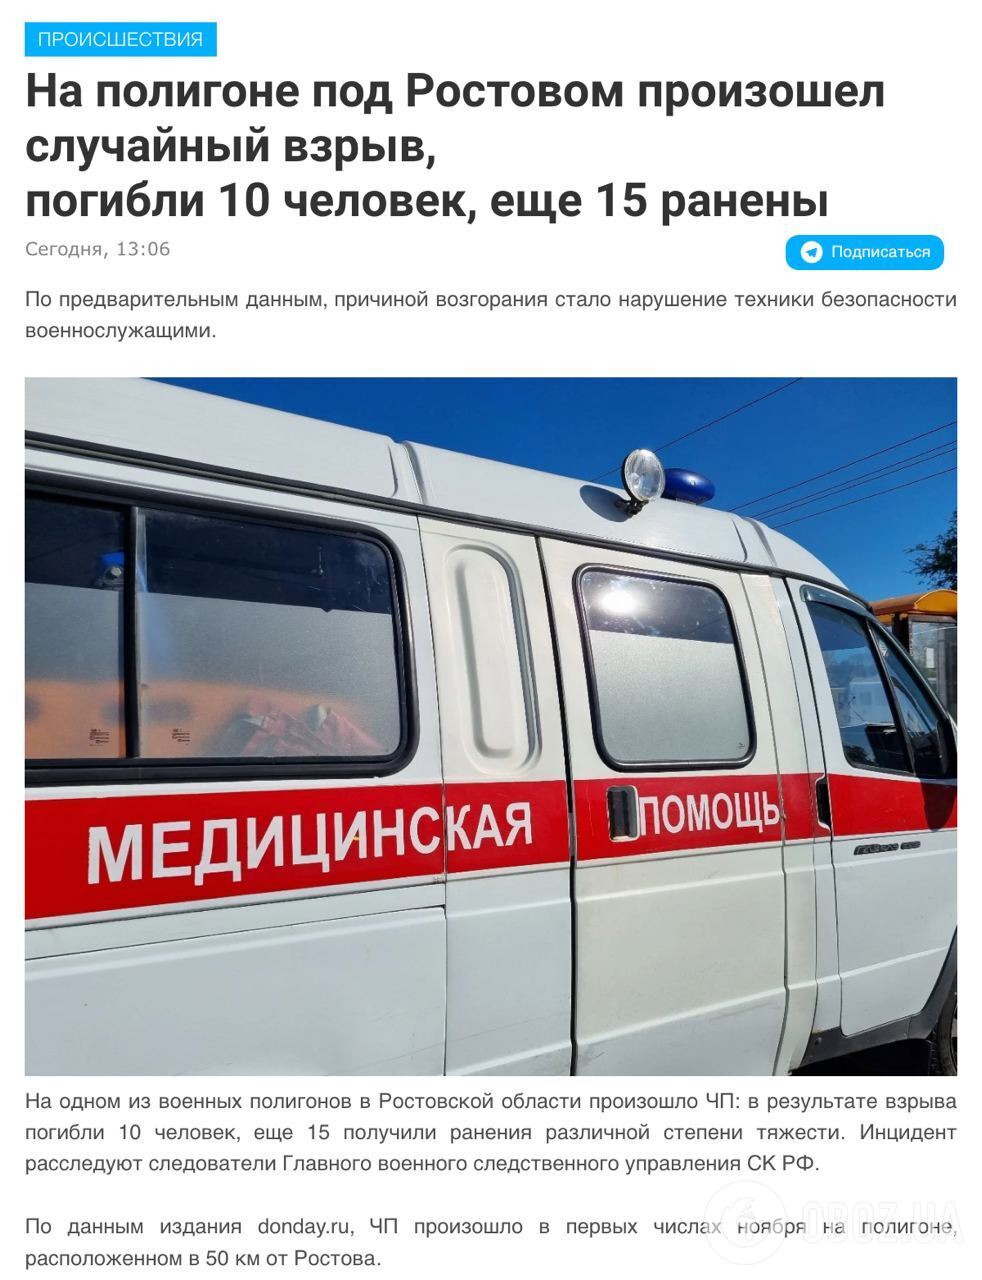 На военном полигоне под Ростовом прогремел взрыв: 10 человек погибли, 15 ранены